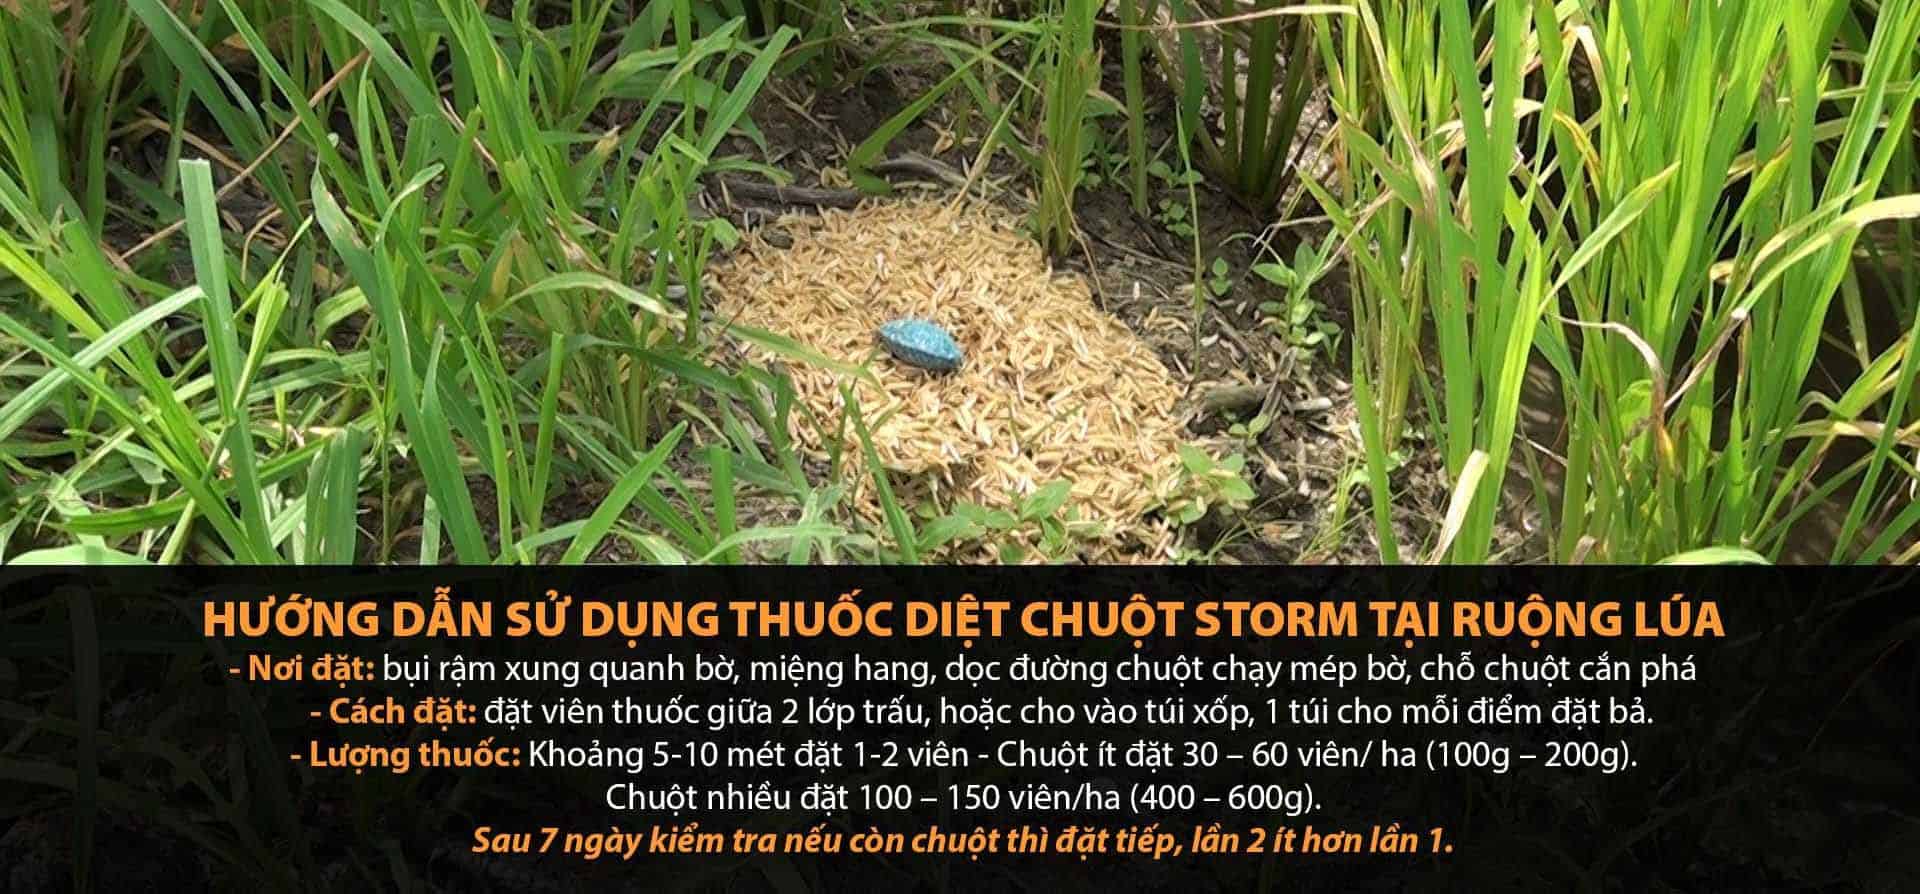 Cách sử dụng thuốc diệt chuột Storm tại ruộng lúa